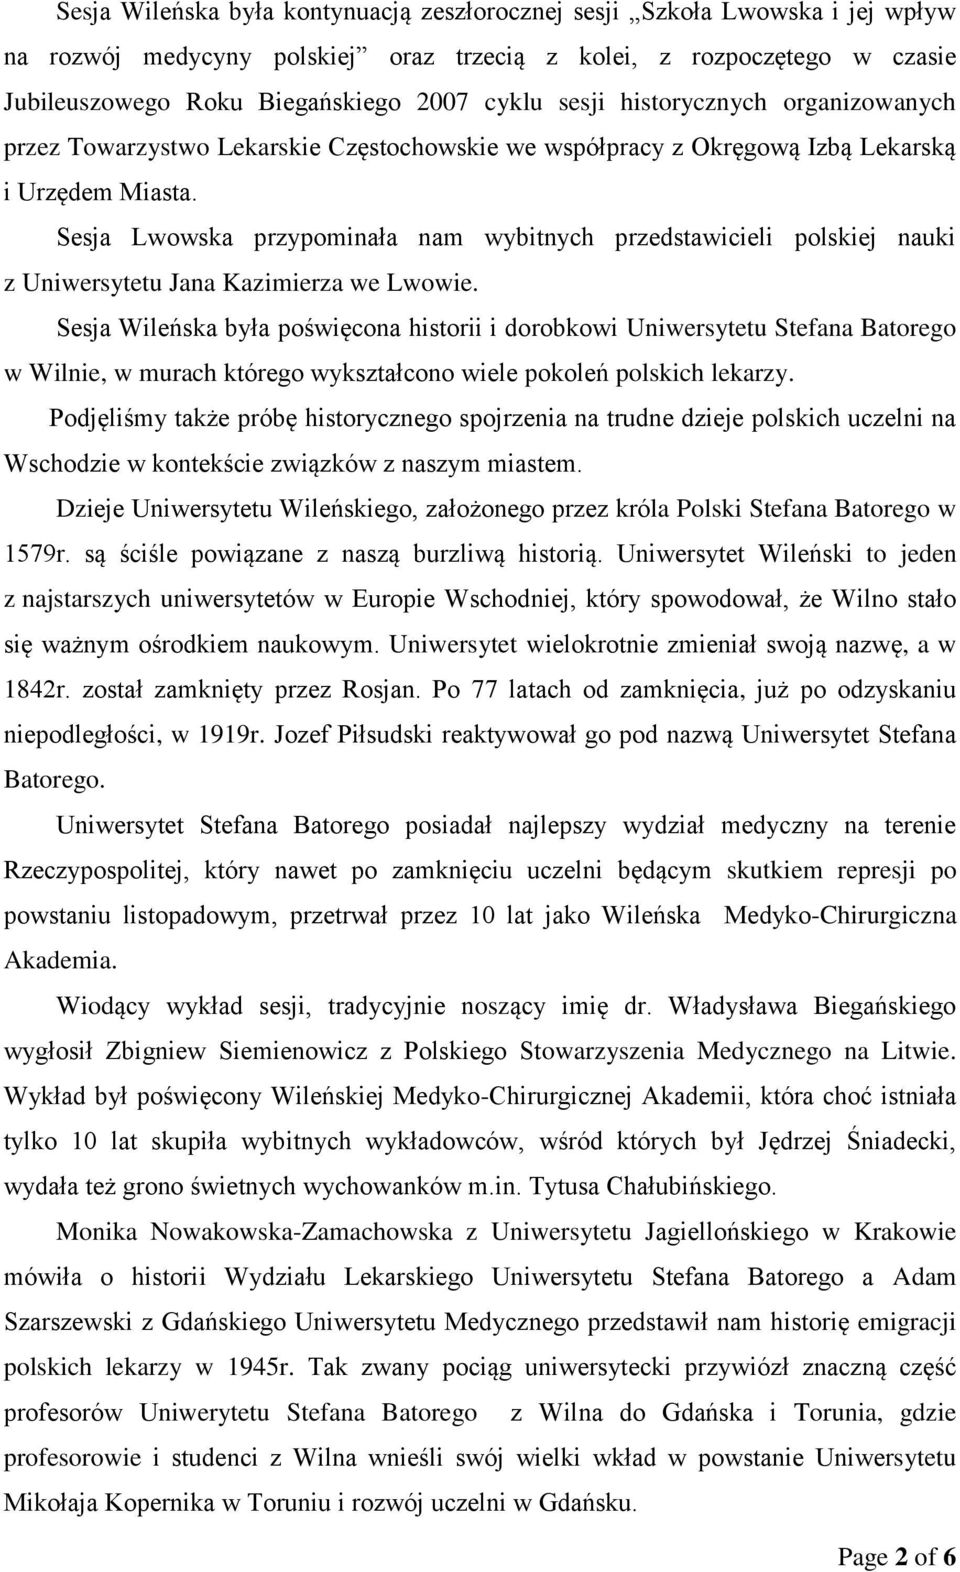 Sesja Lwowska przypominała nam wybitnych przedstawicieli polskiej nauki z Uniwersytetu Jana Kazimierza we Lwowie.